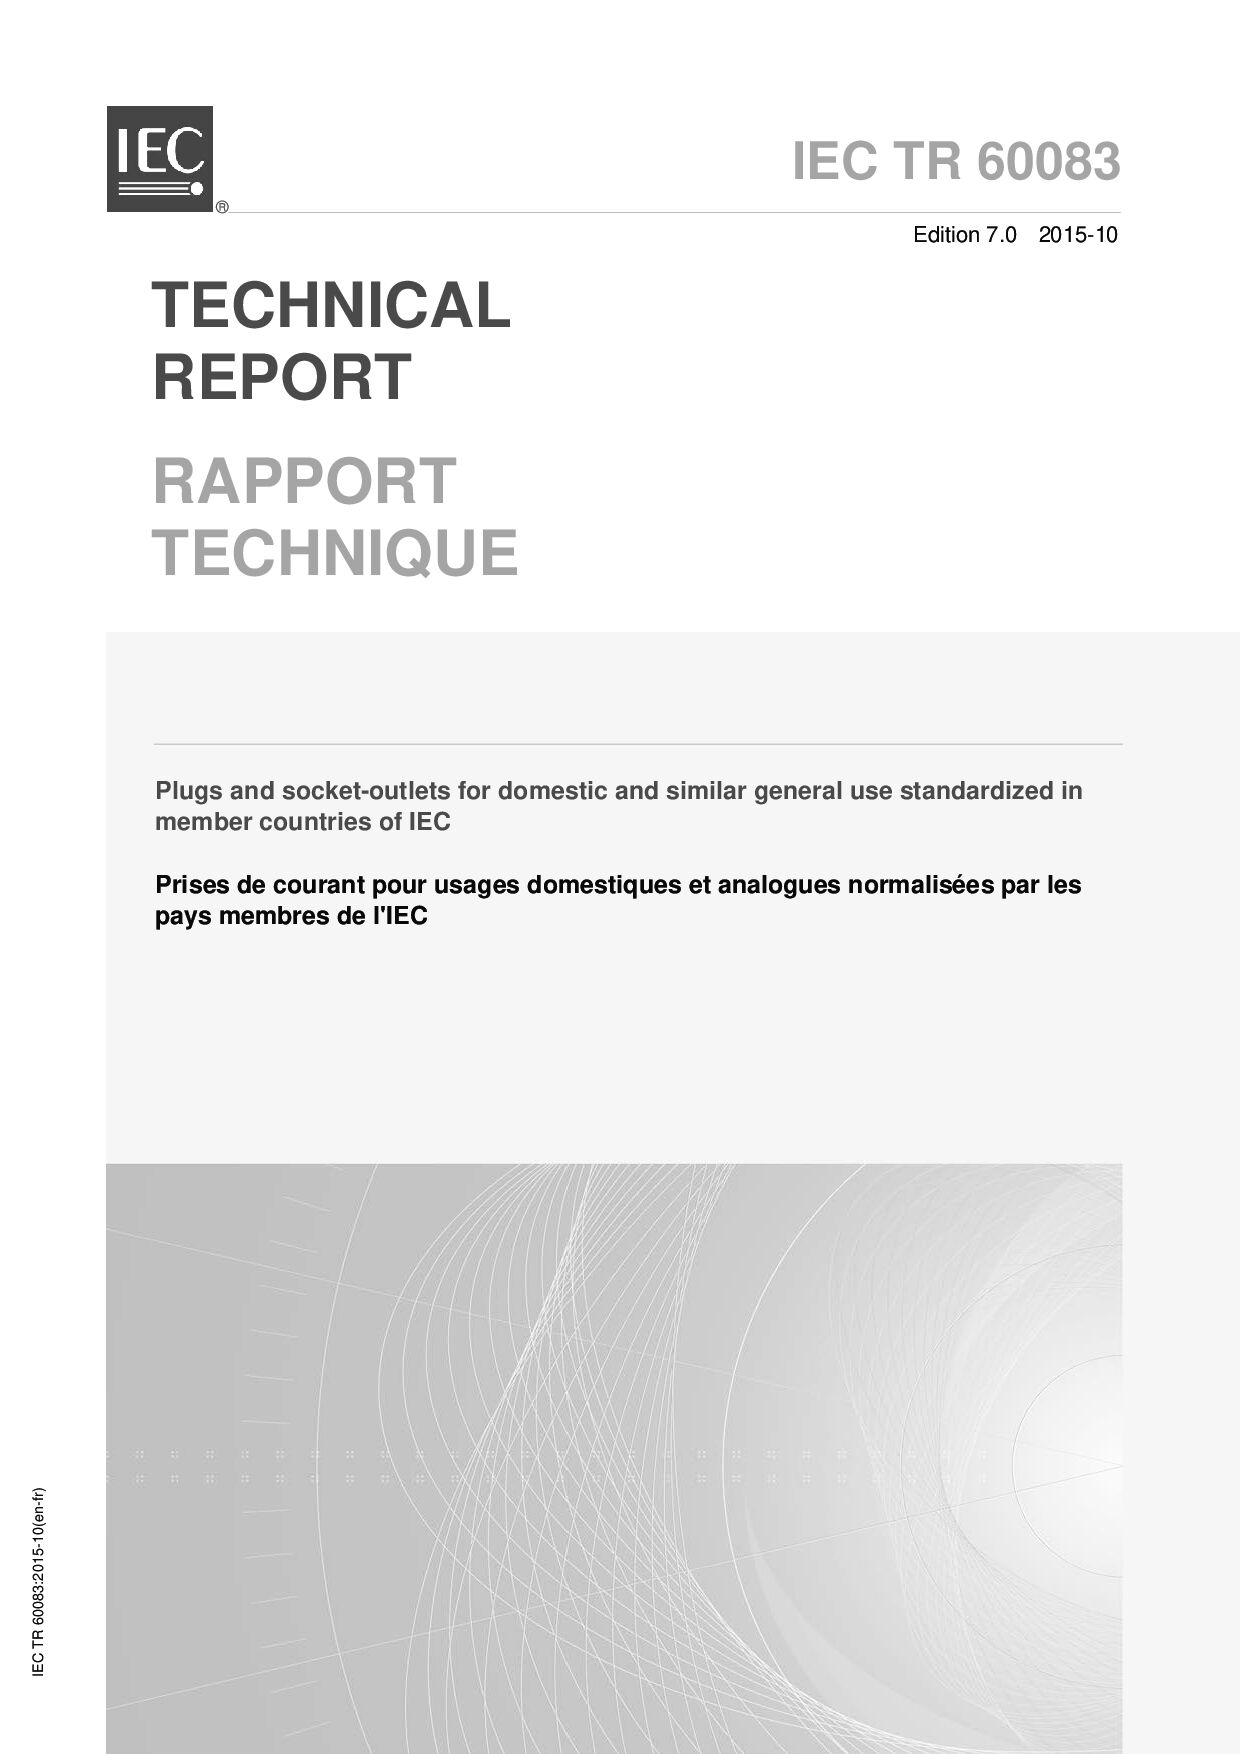 IEC TR 60083:2015